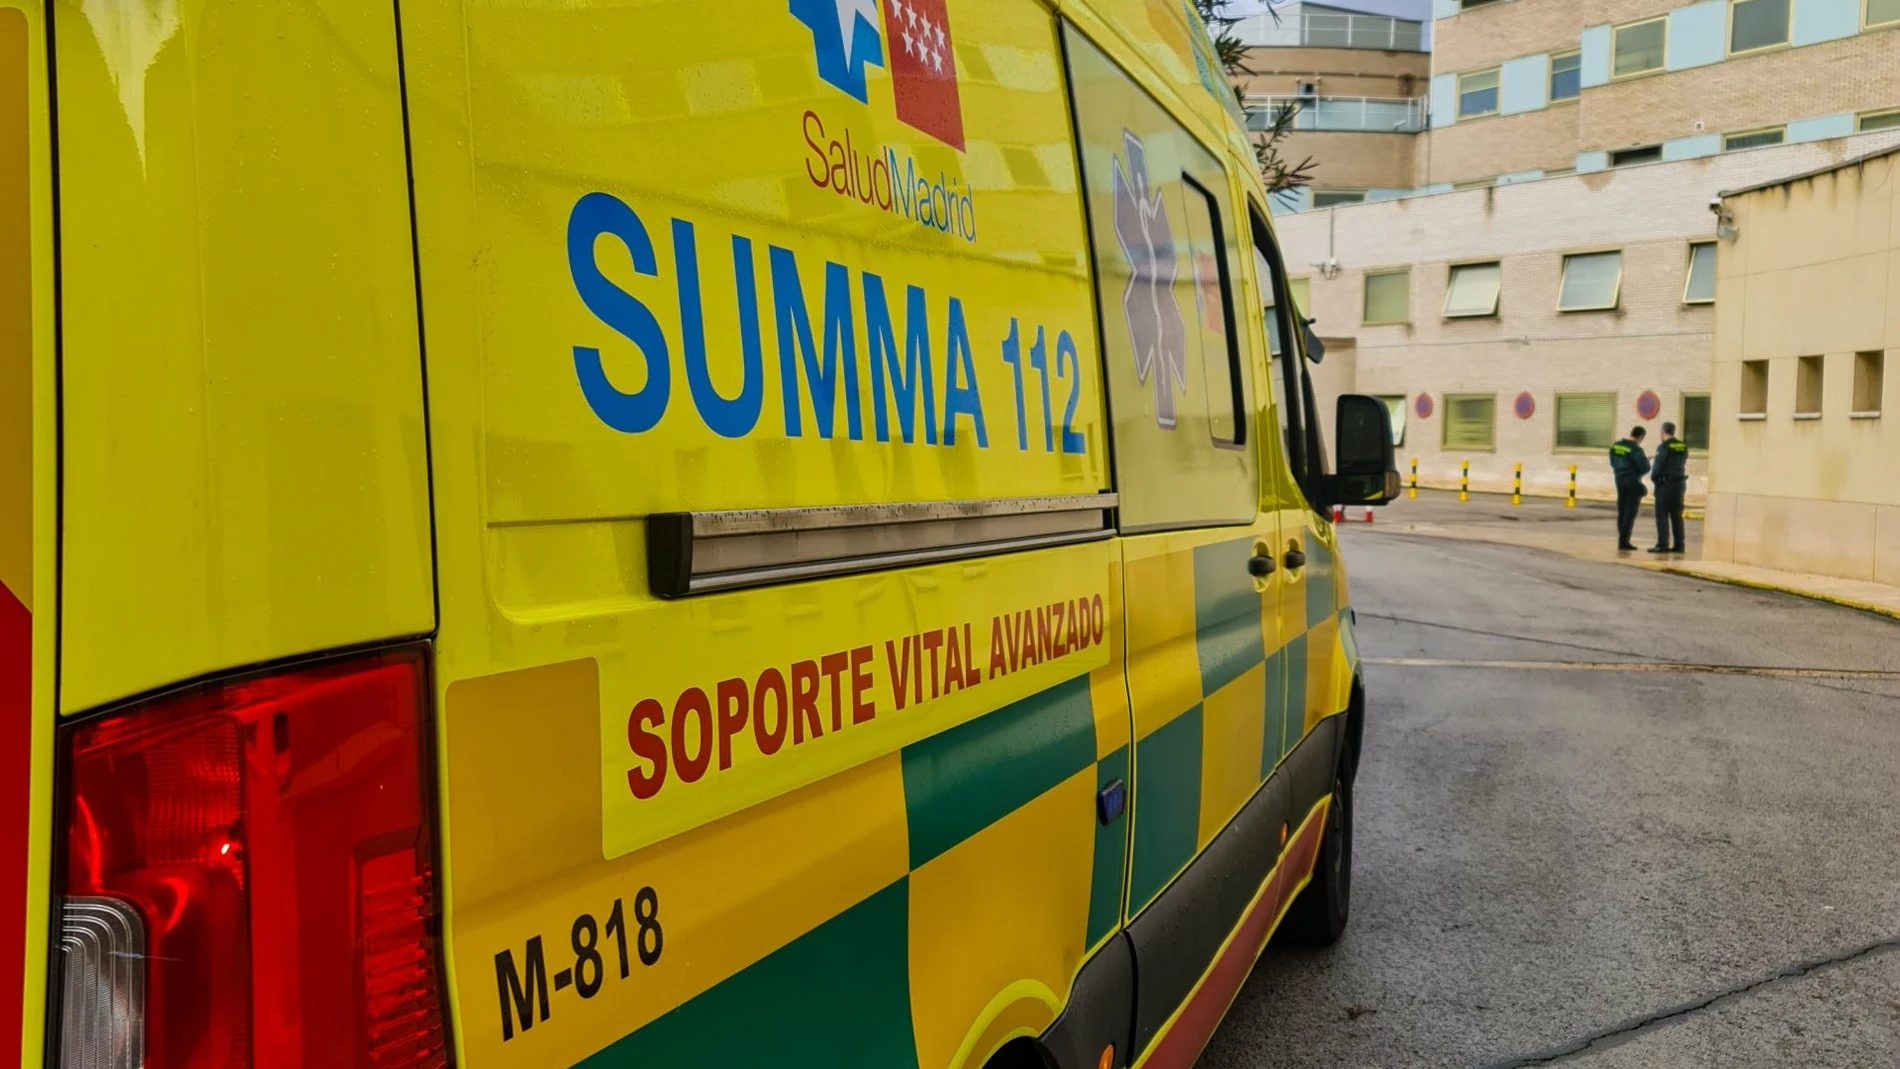 Ambulancia en Madrid